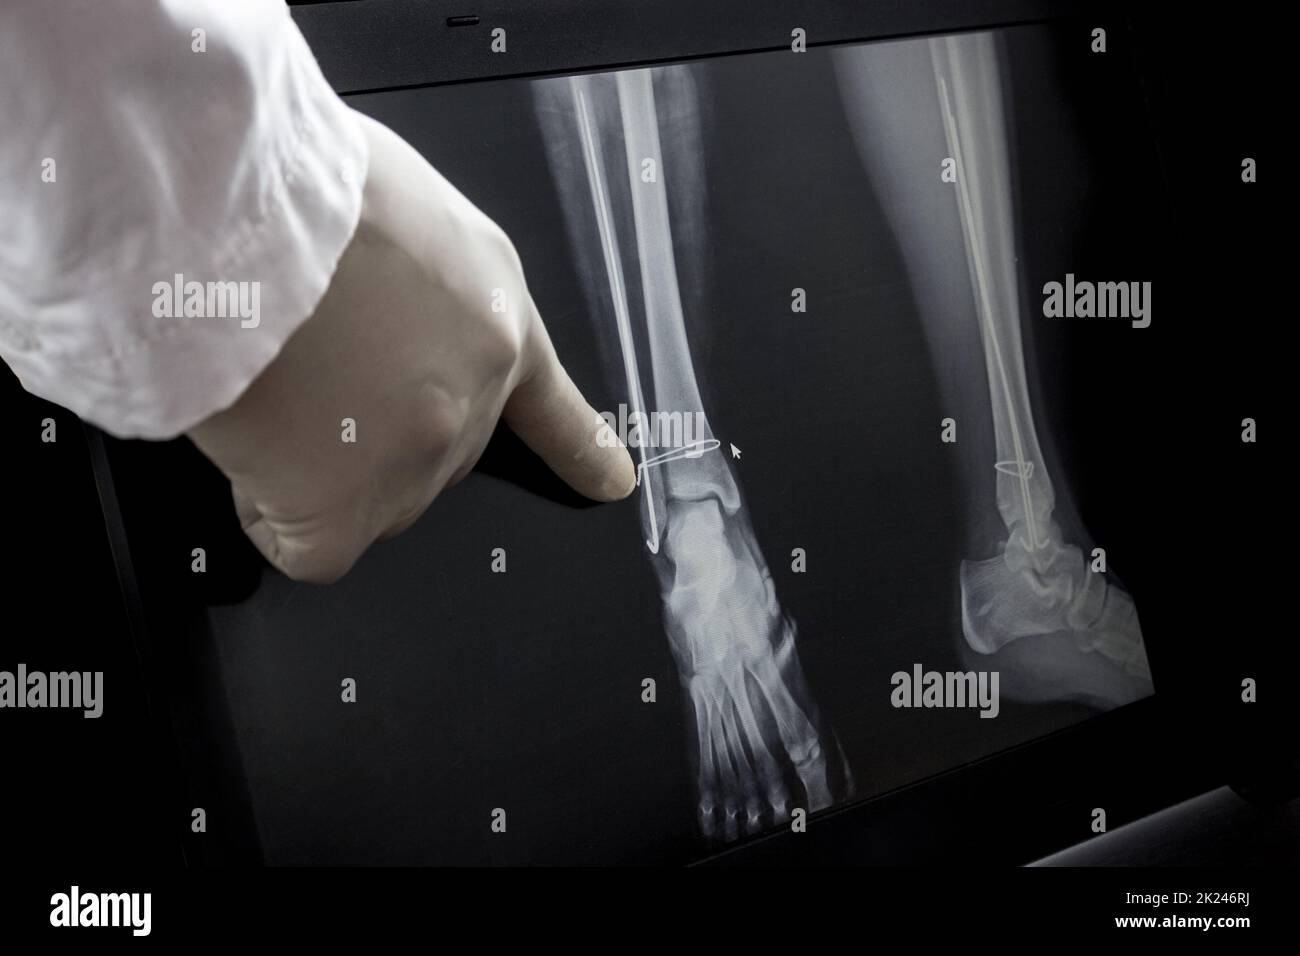 Röntgenaufnahme des Beins nach der Operation - Drähte im Bein. Der Arzt zeigt mit dem Finger auf den operierten Bereich. Stockfoto